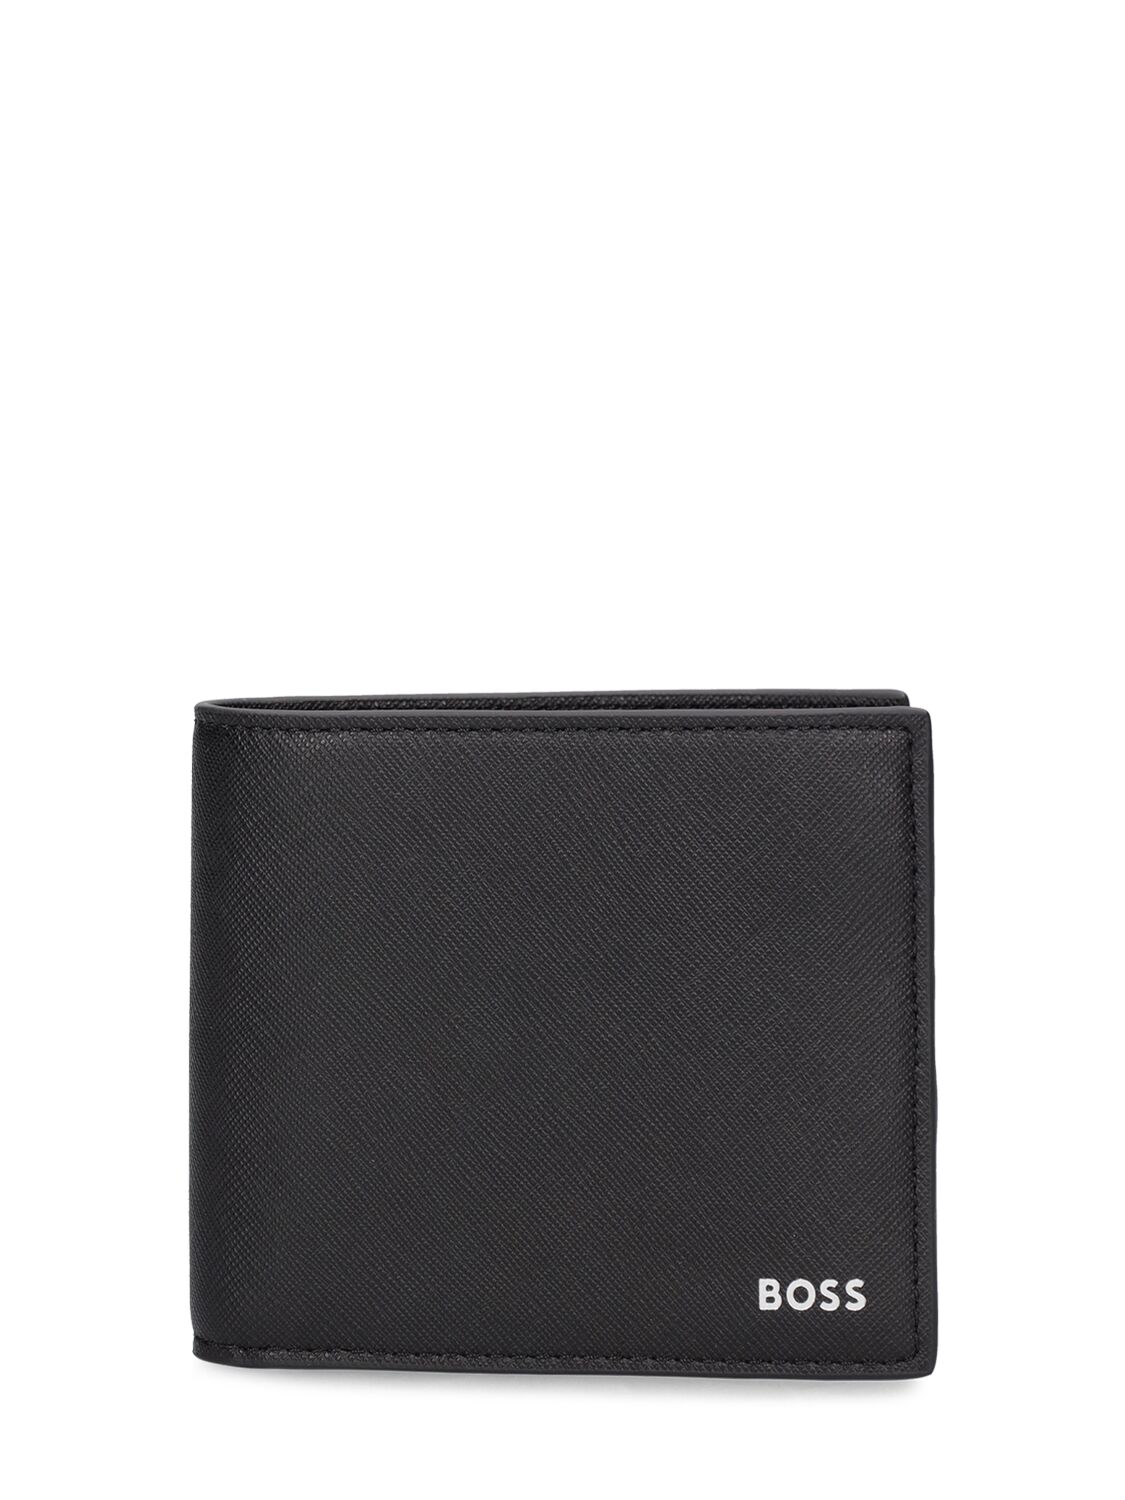 Hugo Boss Zair Leather Billfold Wallet In Black 001